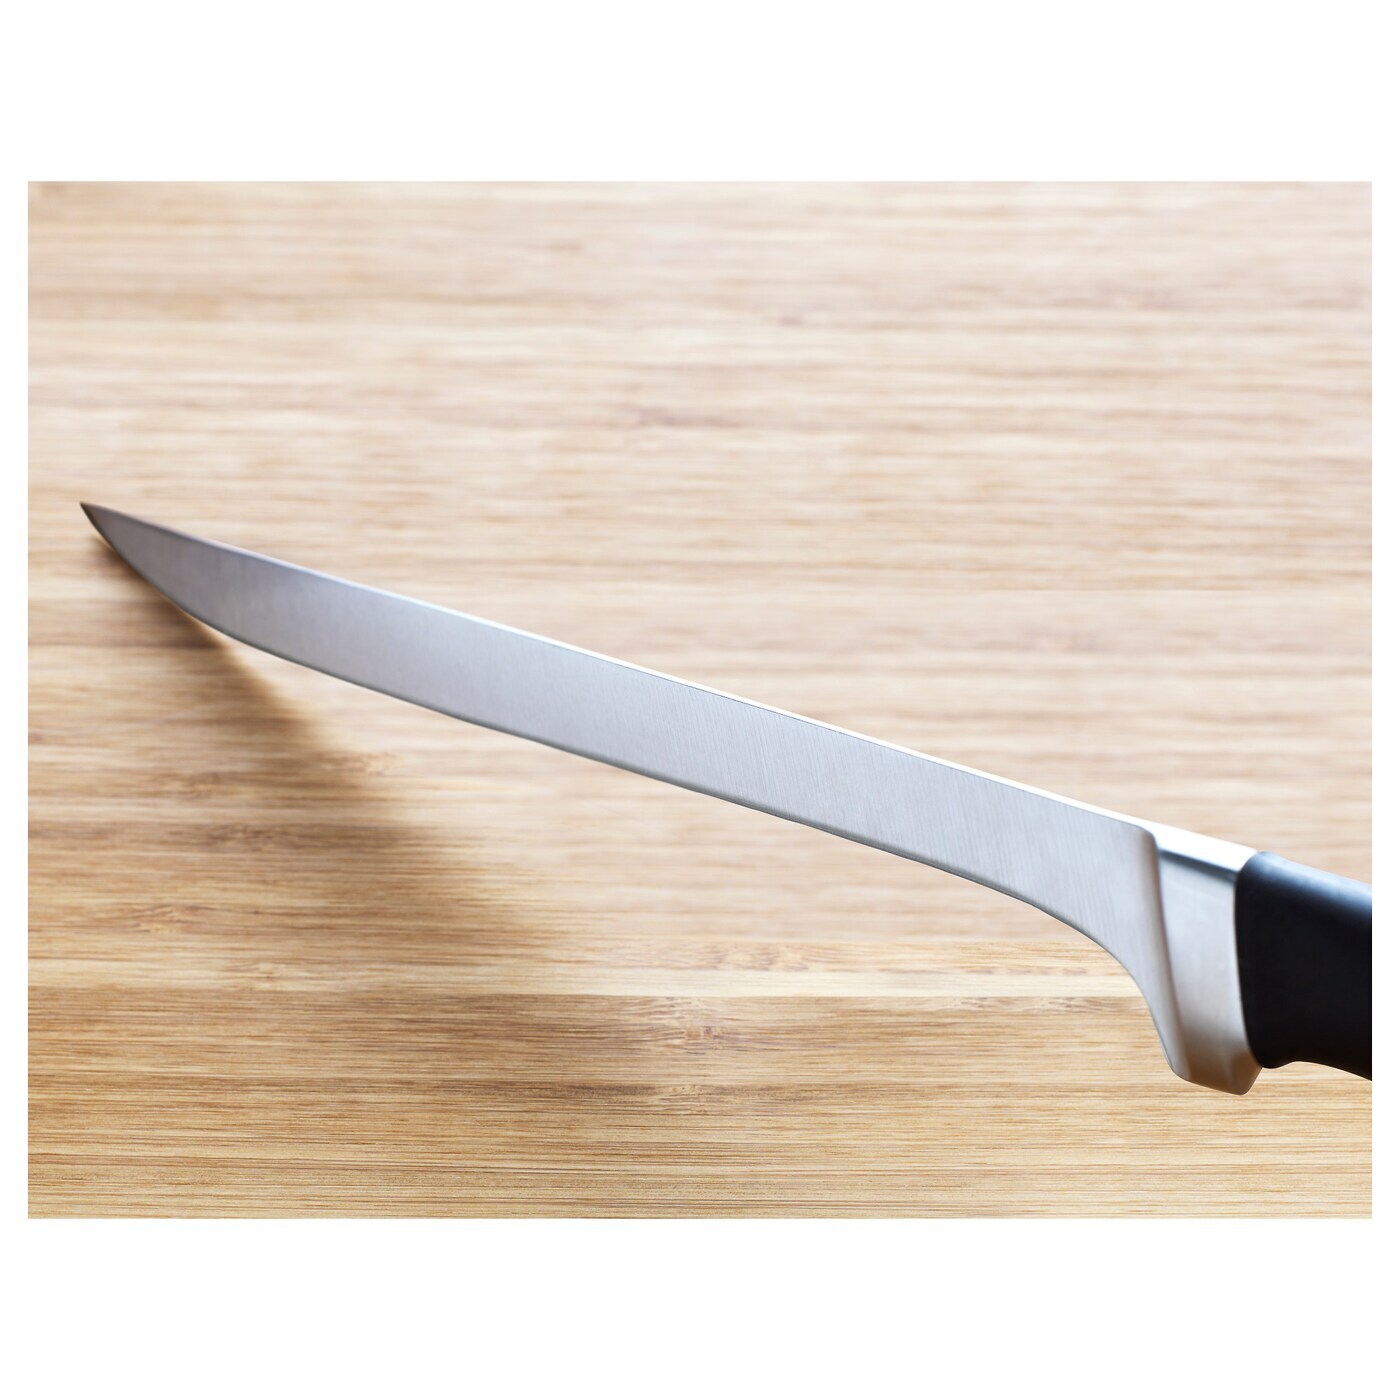 Как выбрать филейный нож?